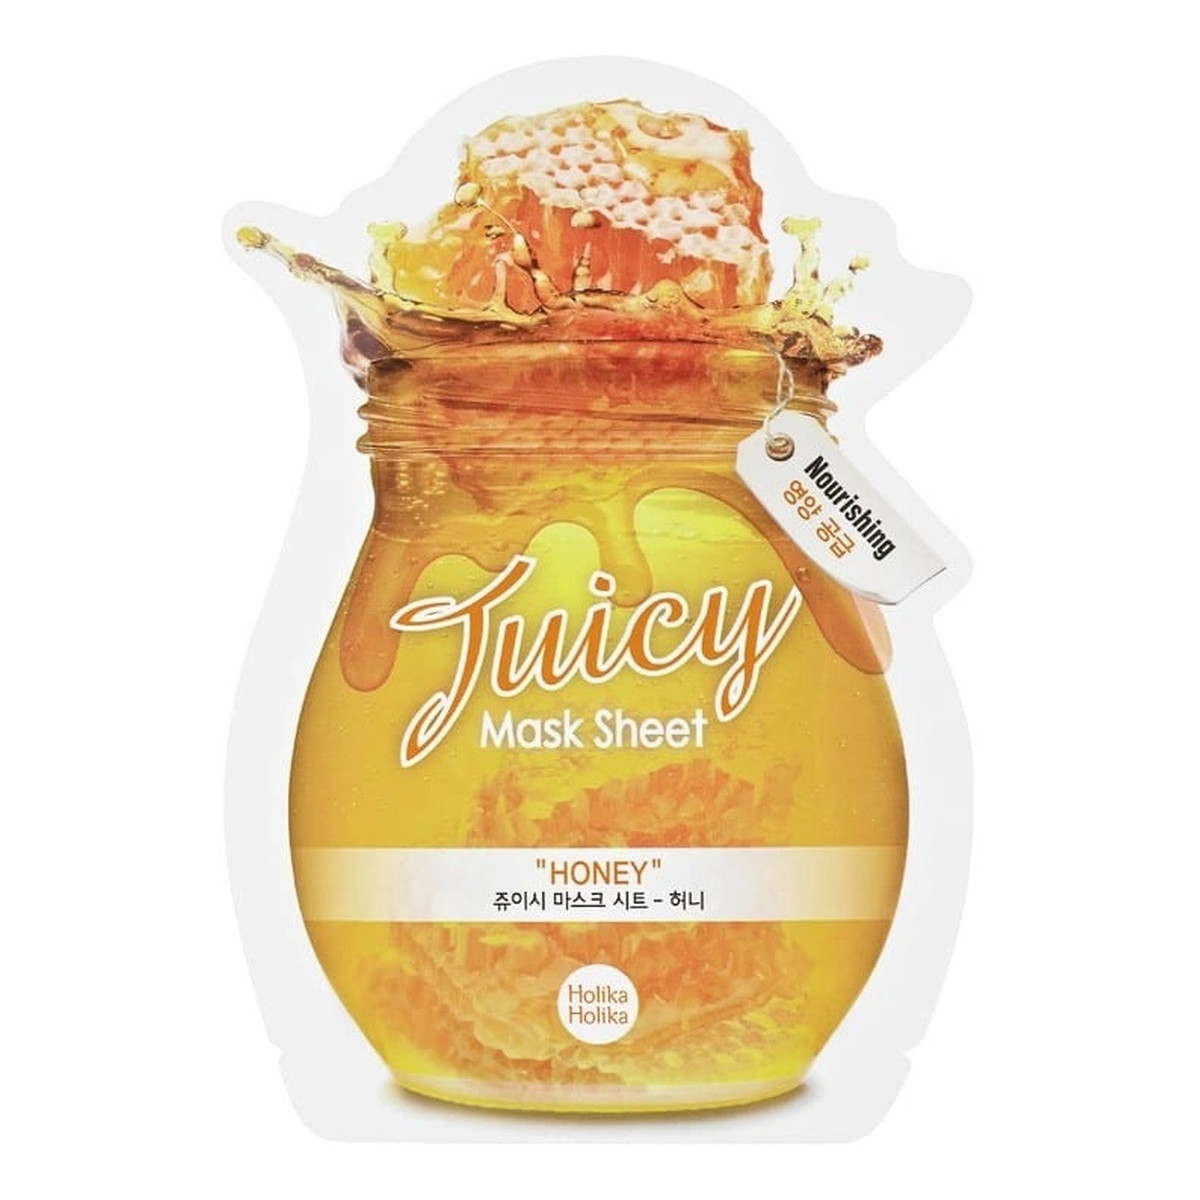 Holika Holika Honey juicy mask sheet odżywczo-nawilżająca maseczka w płachcie 20ml